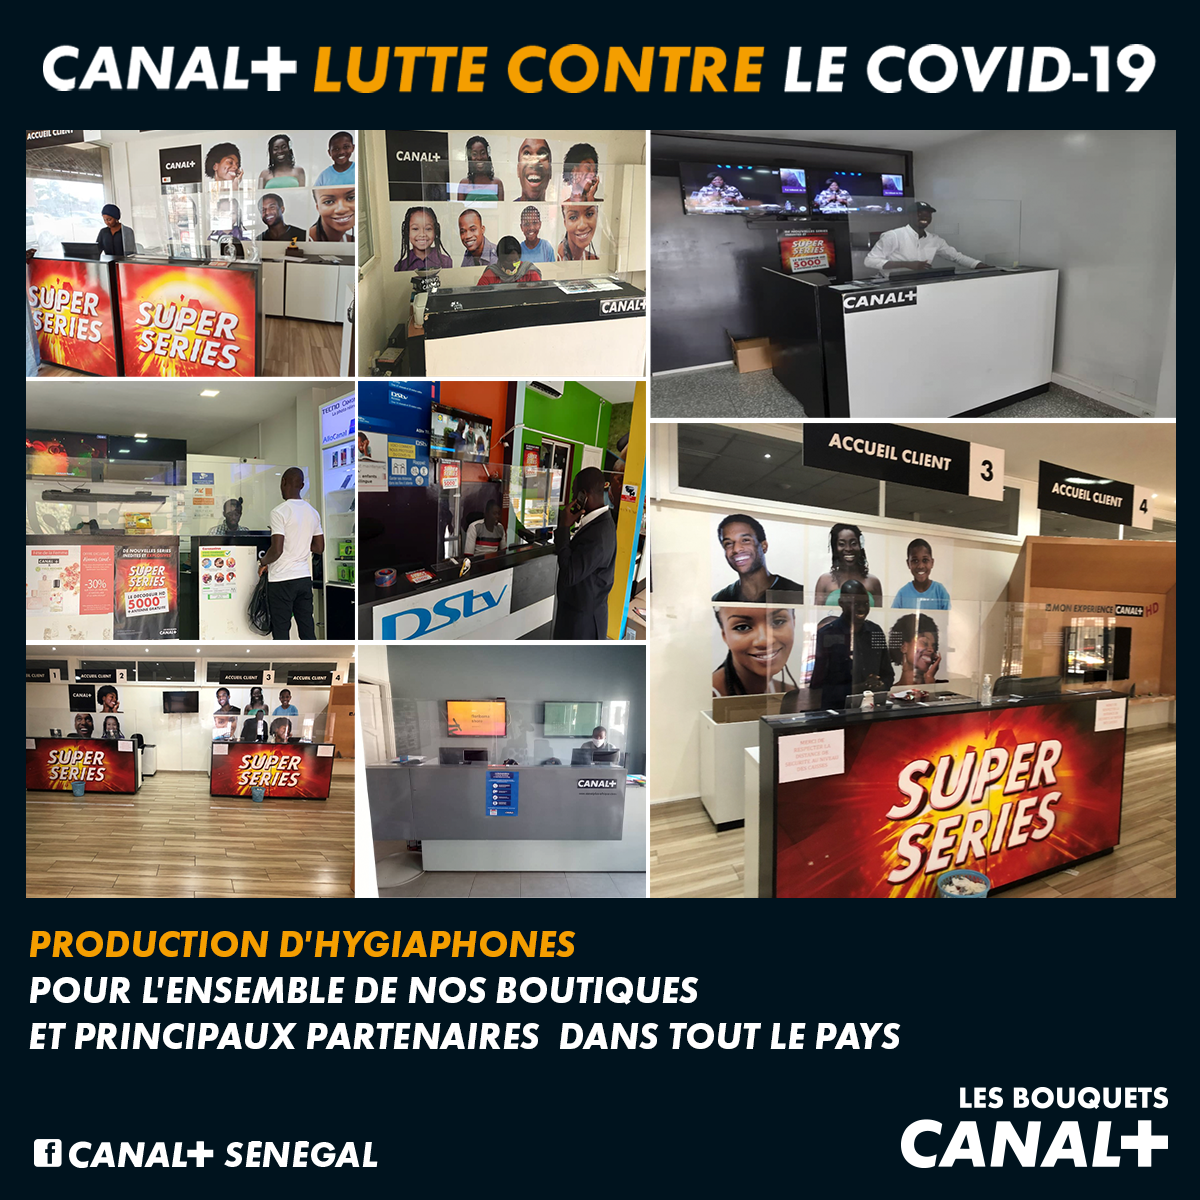 Visio conférence de presse/Canal+Encore+aux côtés de ses abonnés: 20 nouvelles chaînes rejoignent les bouquets Canal+, toujours au même prix !